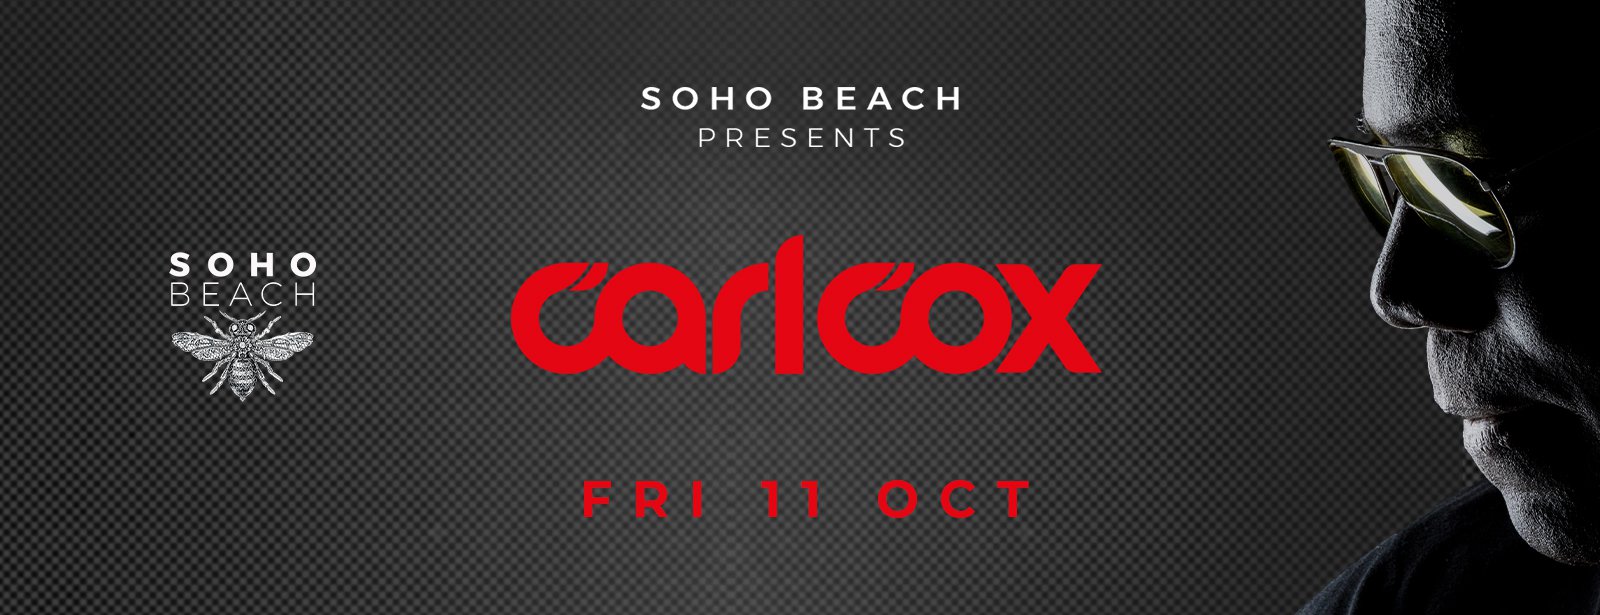 Carl Cox at Soho Beach DXB - Coming Soon in UAE